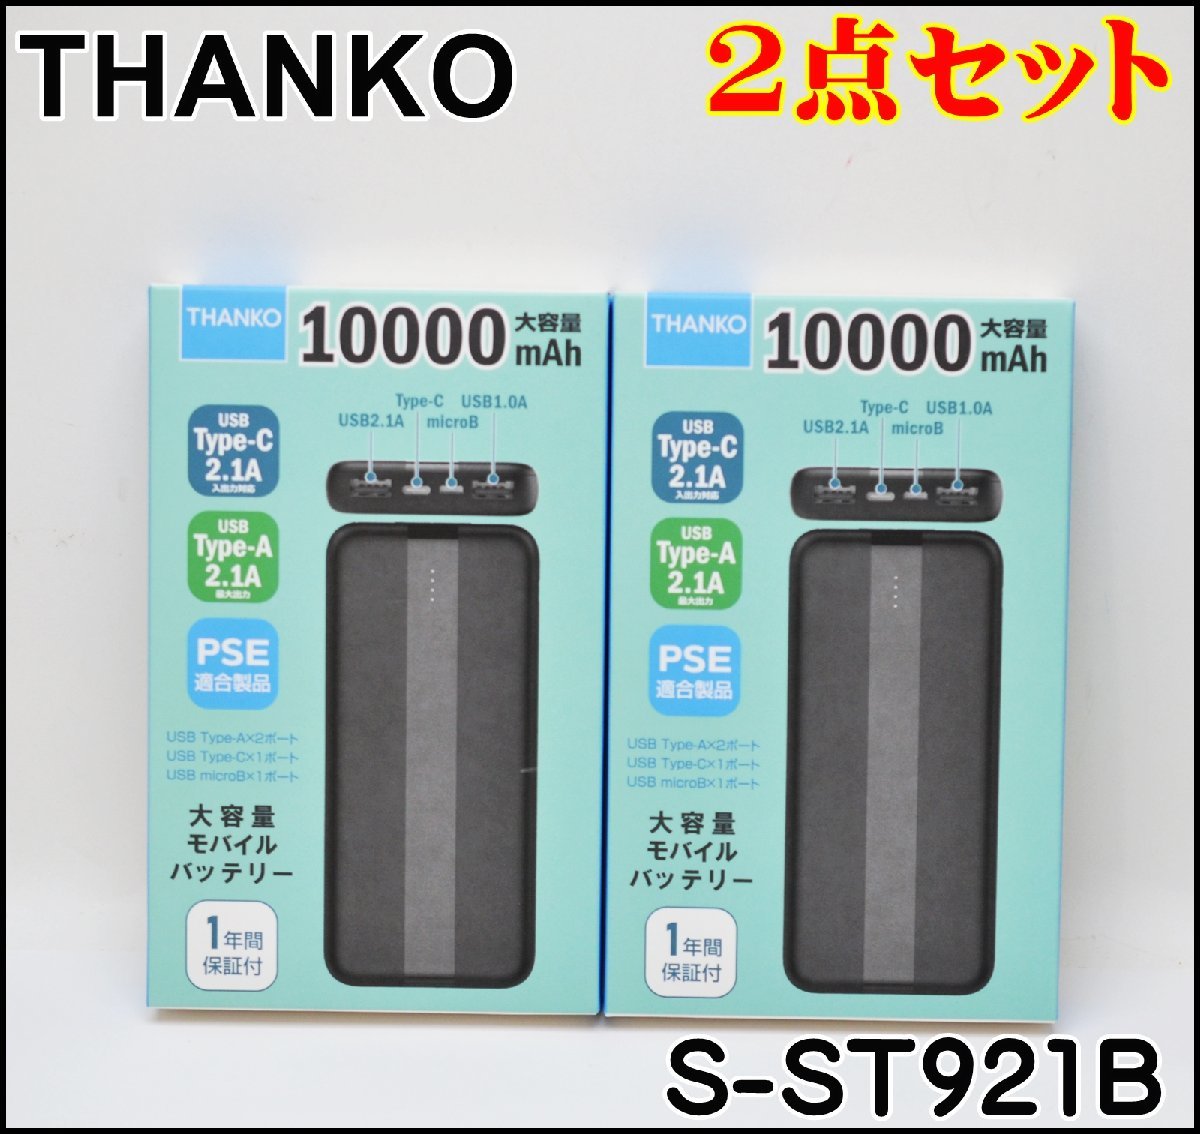 2点セット 新品未開封 サンコー 10000mAh 大容量 モバイルバッテリー S-ST921B USB Type-C 2.1A THANKO PSE適合製品の画像1